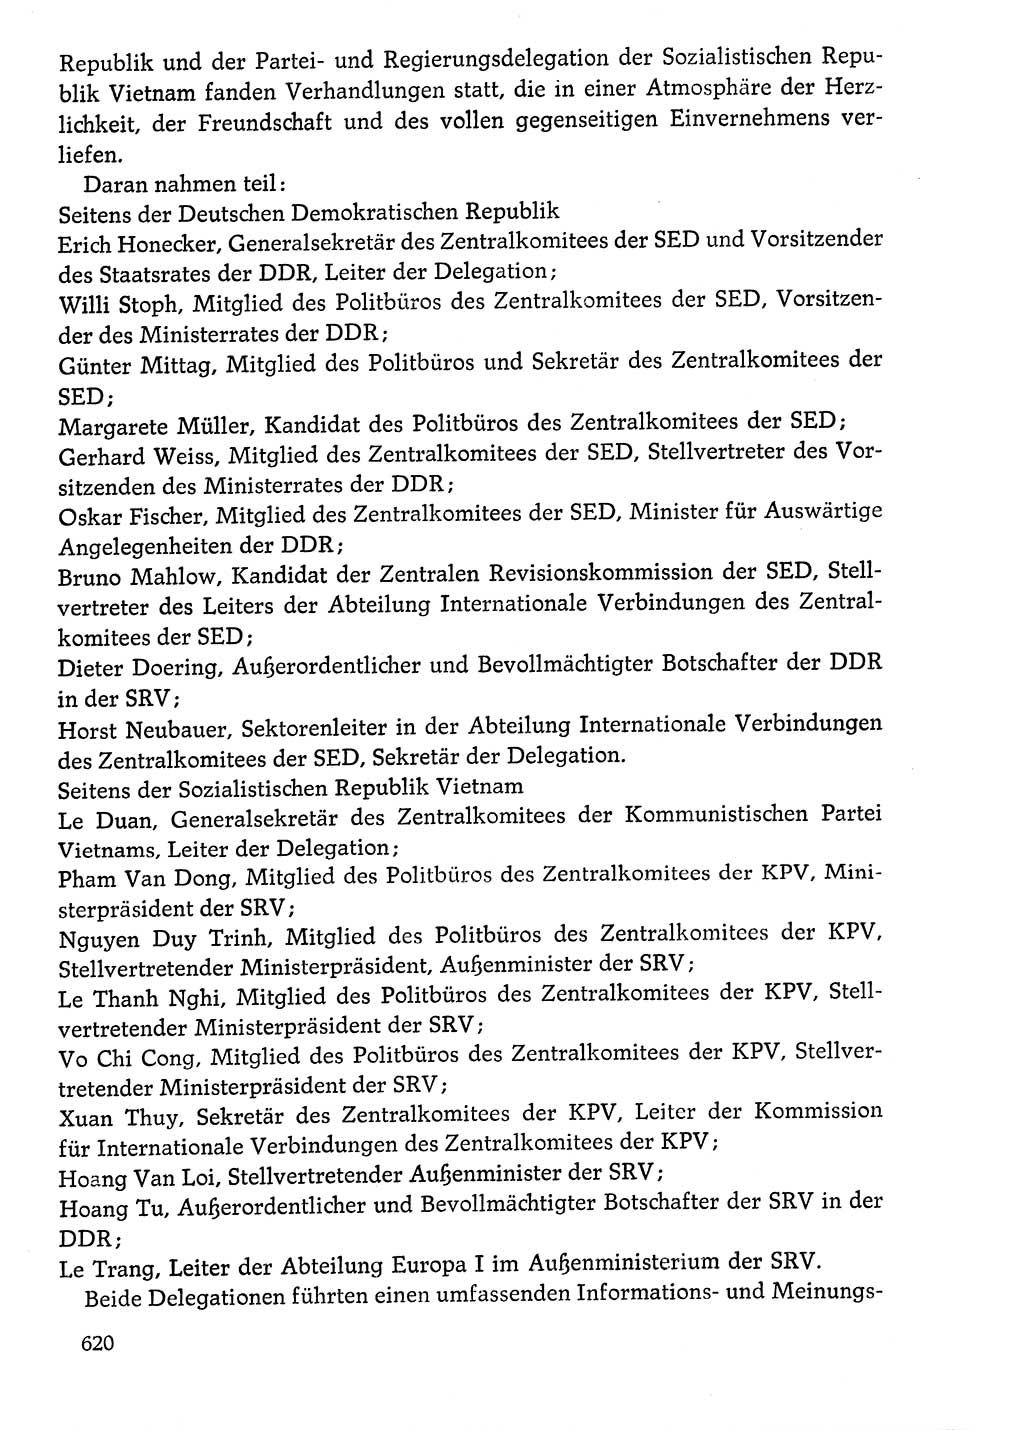 Dokumente der Sozialistischen Einheitspartei Deutschlands (SED) [Deutsche Demokratische Republik (DDR)] 1976-1977, Seite 620 (Dok. SED DDR 1976-1977, S. 620)